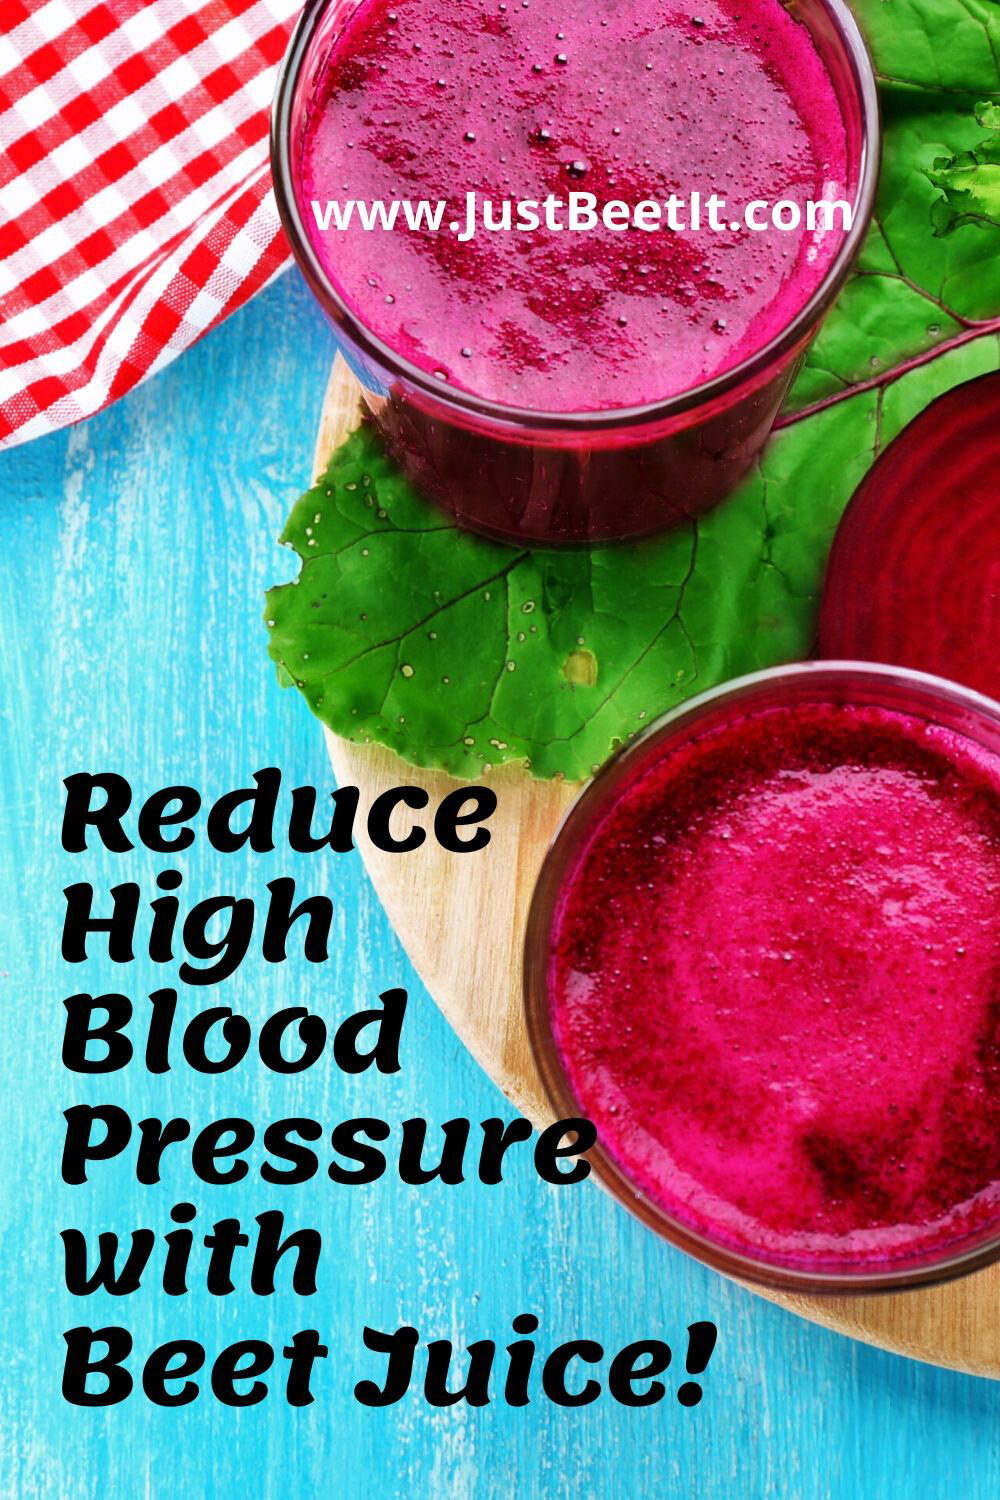 Beetroot juice and blood pressure